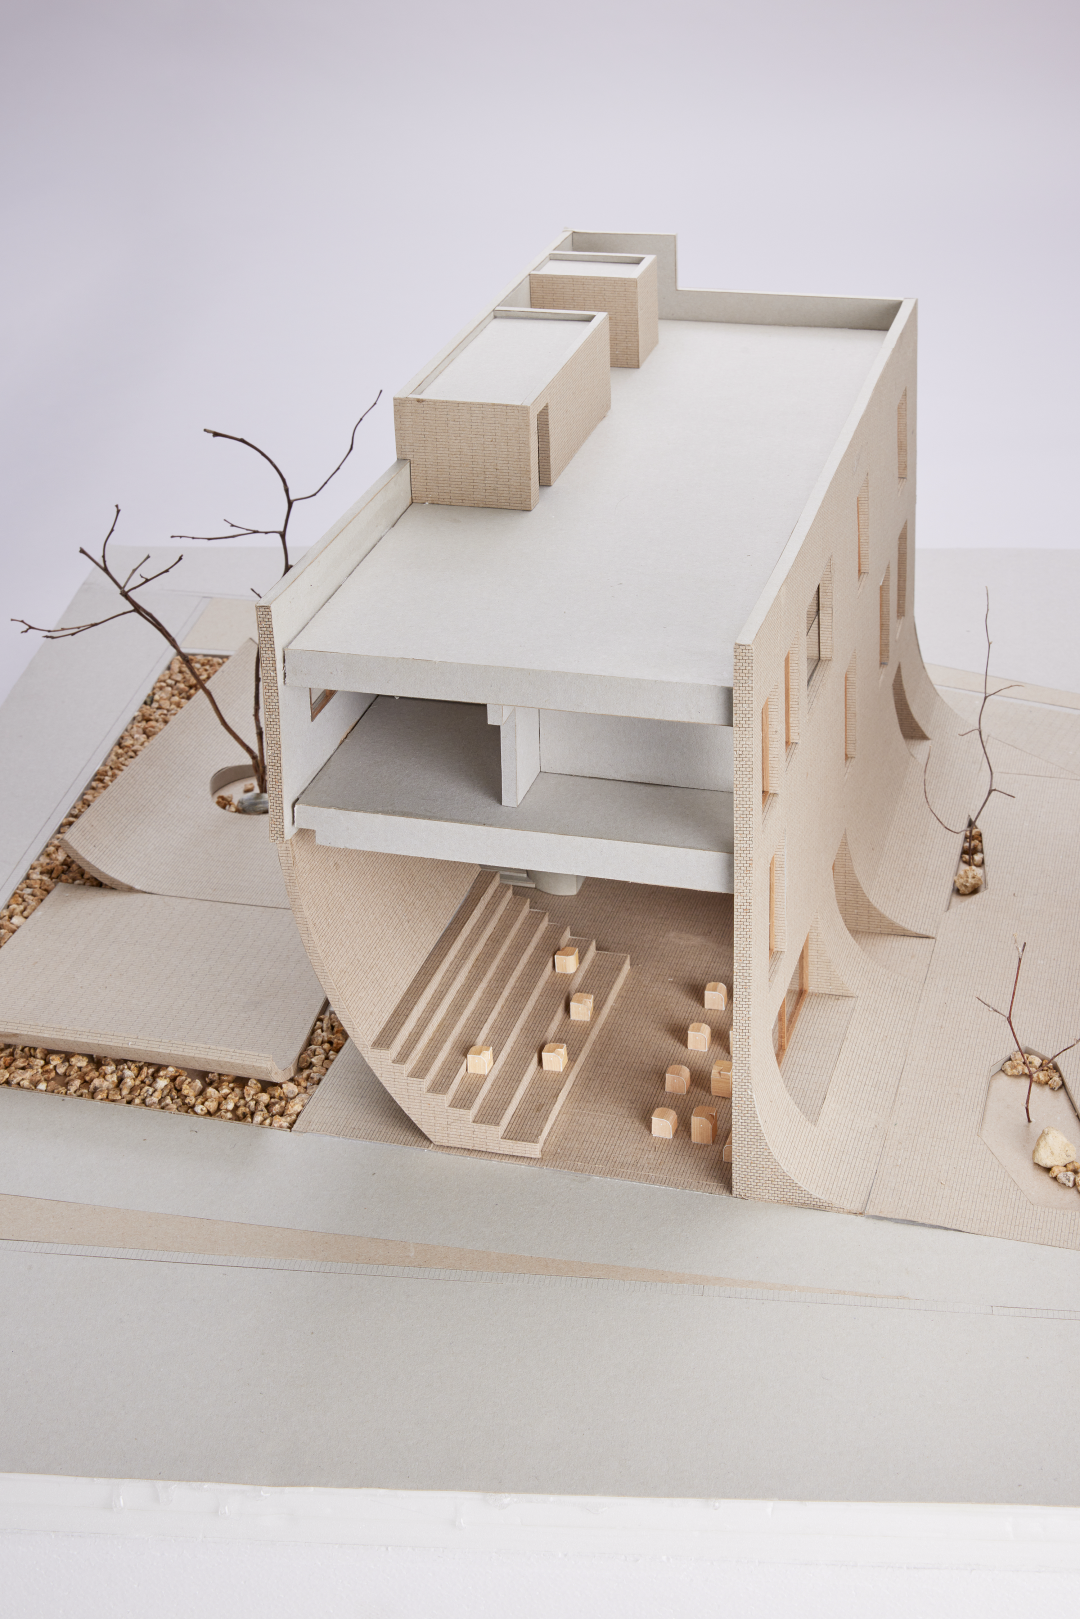 模型 韓國泰瑞咖啡館Café Teri (카페태리, 봉이호떡)／NAMELESS Architecture